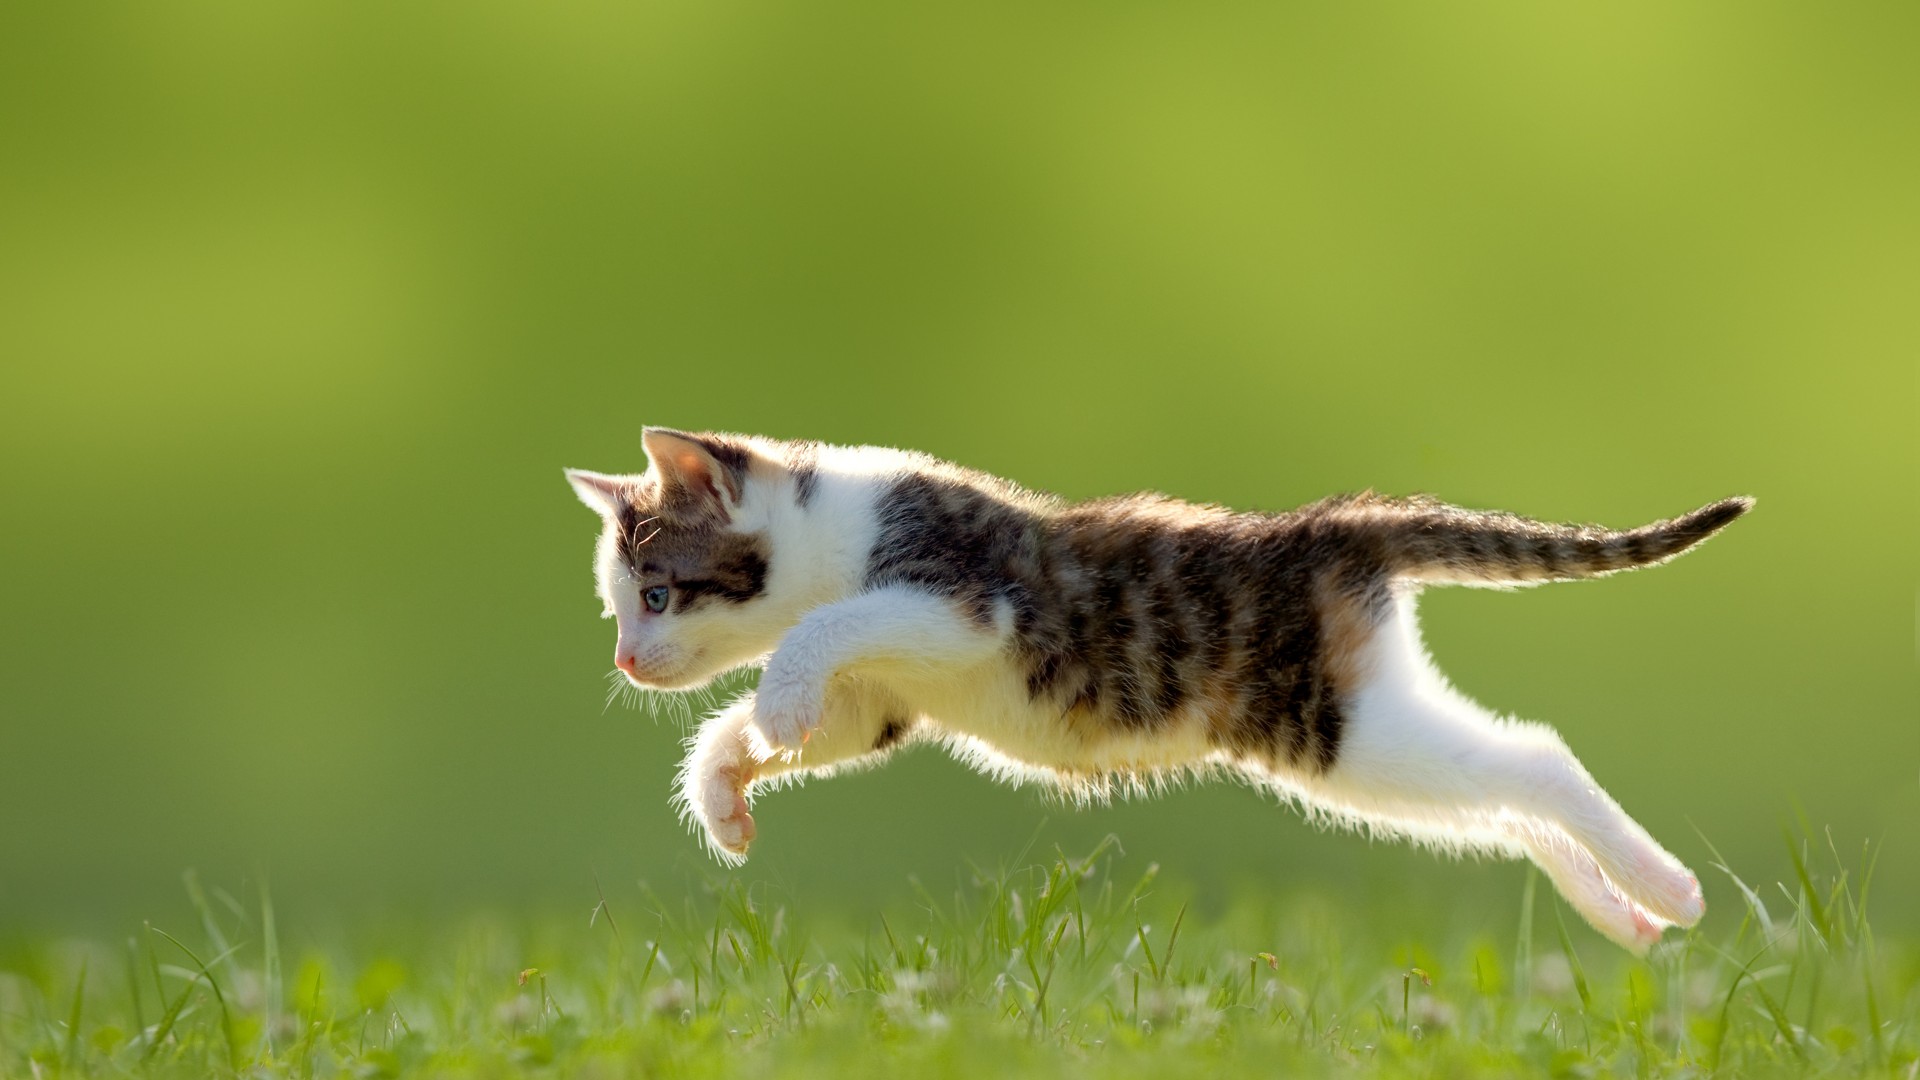 小花猫 草丛 跳跃 可爱动物壁纸 动物壁纸 壁纸下载 彼岸桌面